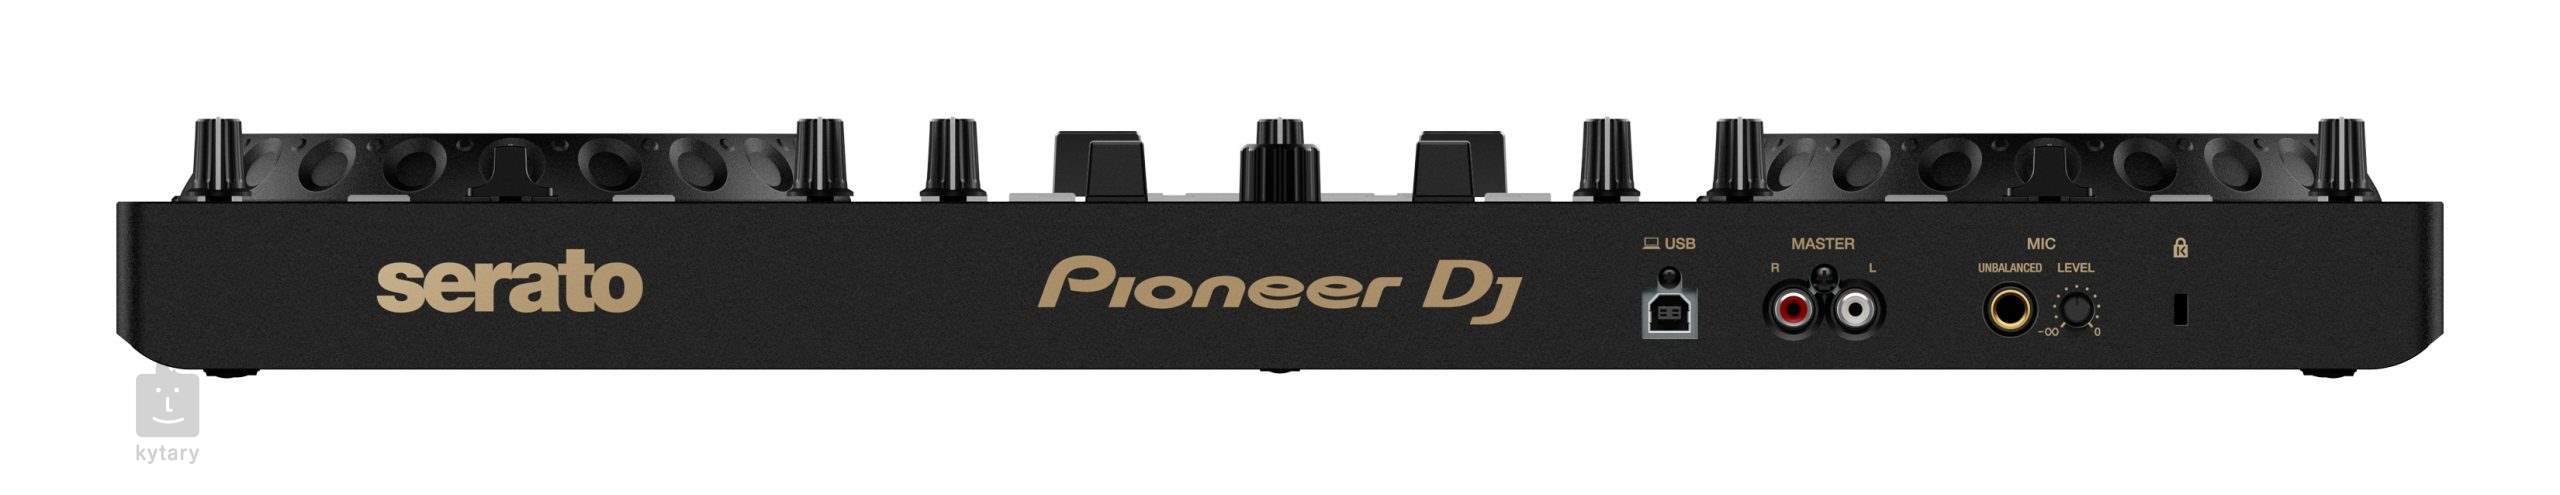 DDJ-REV1 Usb dj controller Pioneer dj